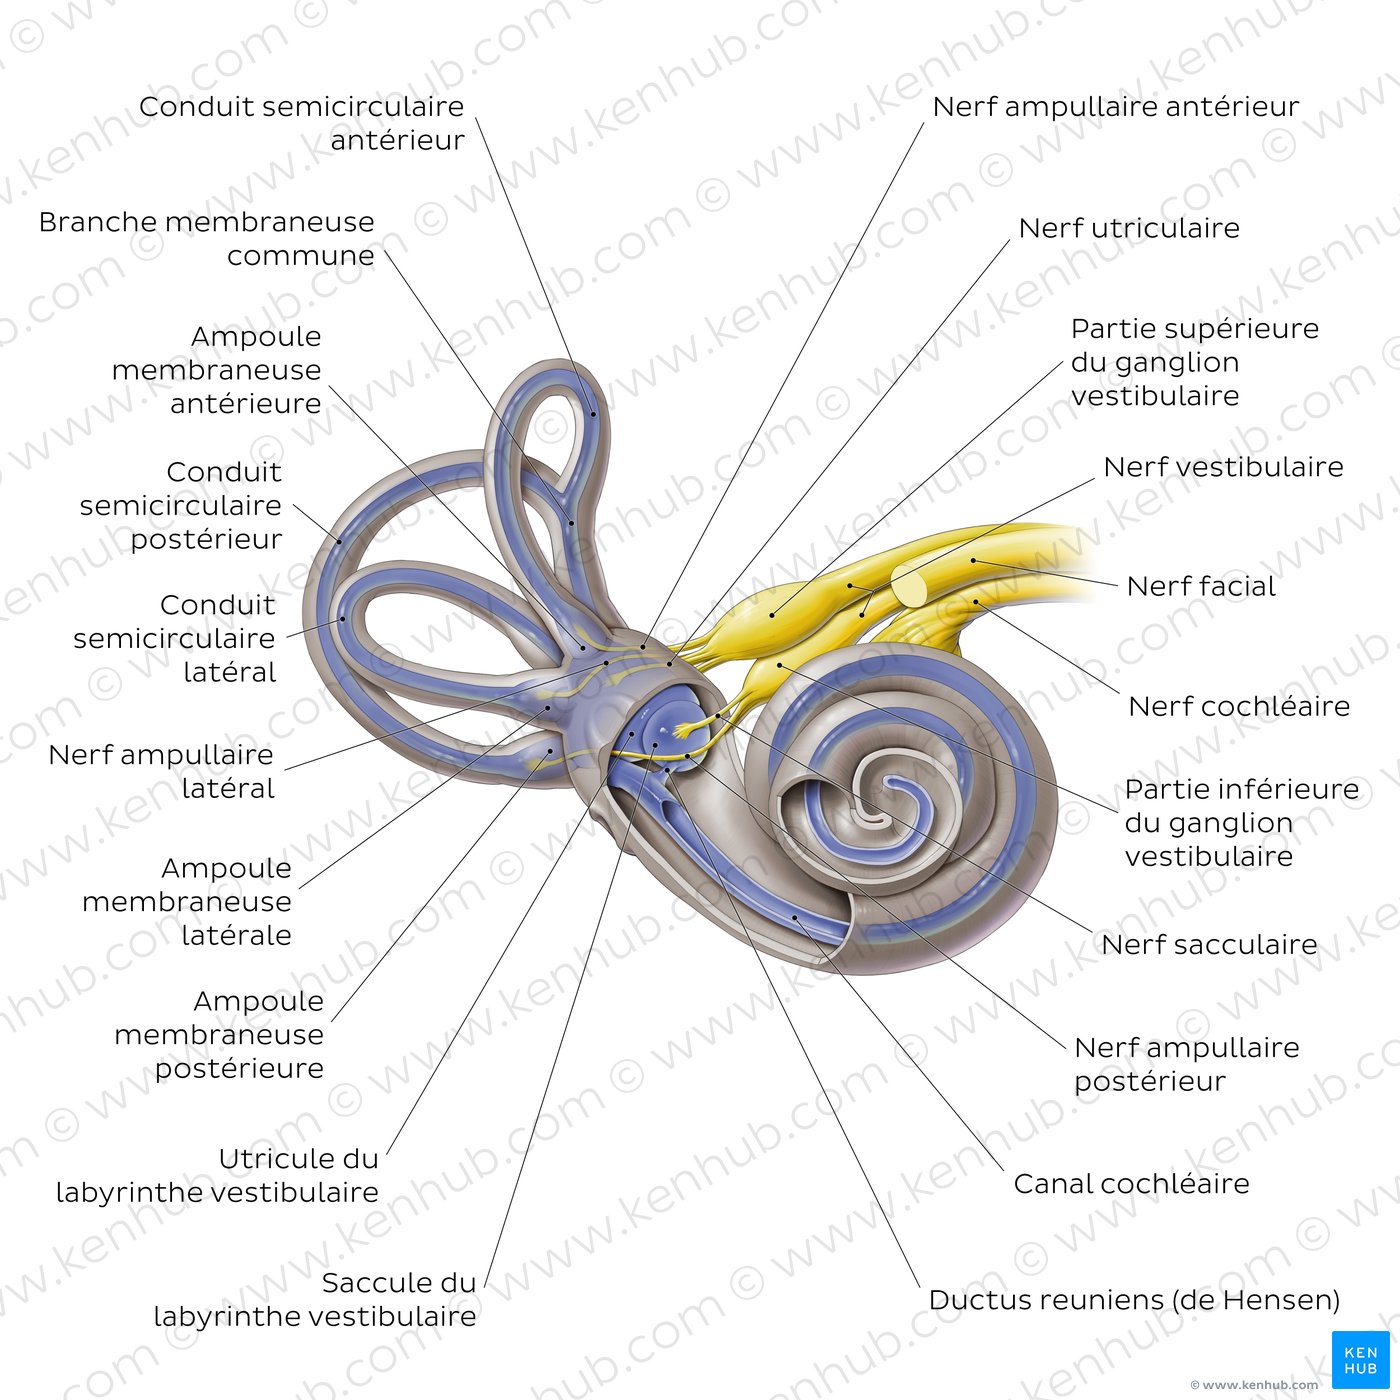 Labyrinthe membraneux de l'oreille interne (schéma)